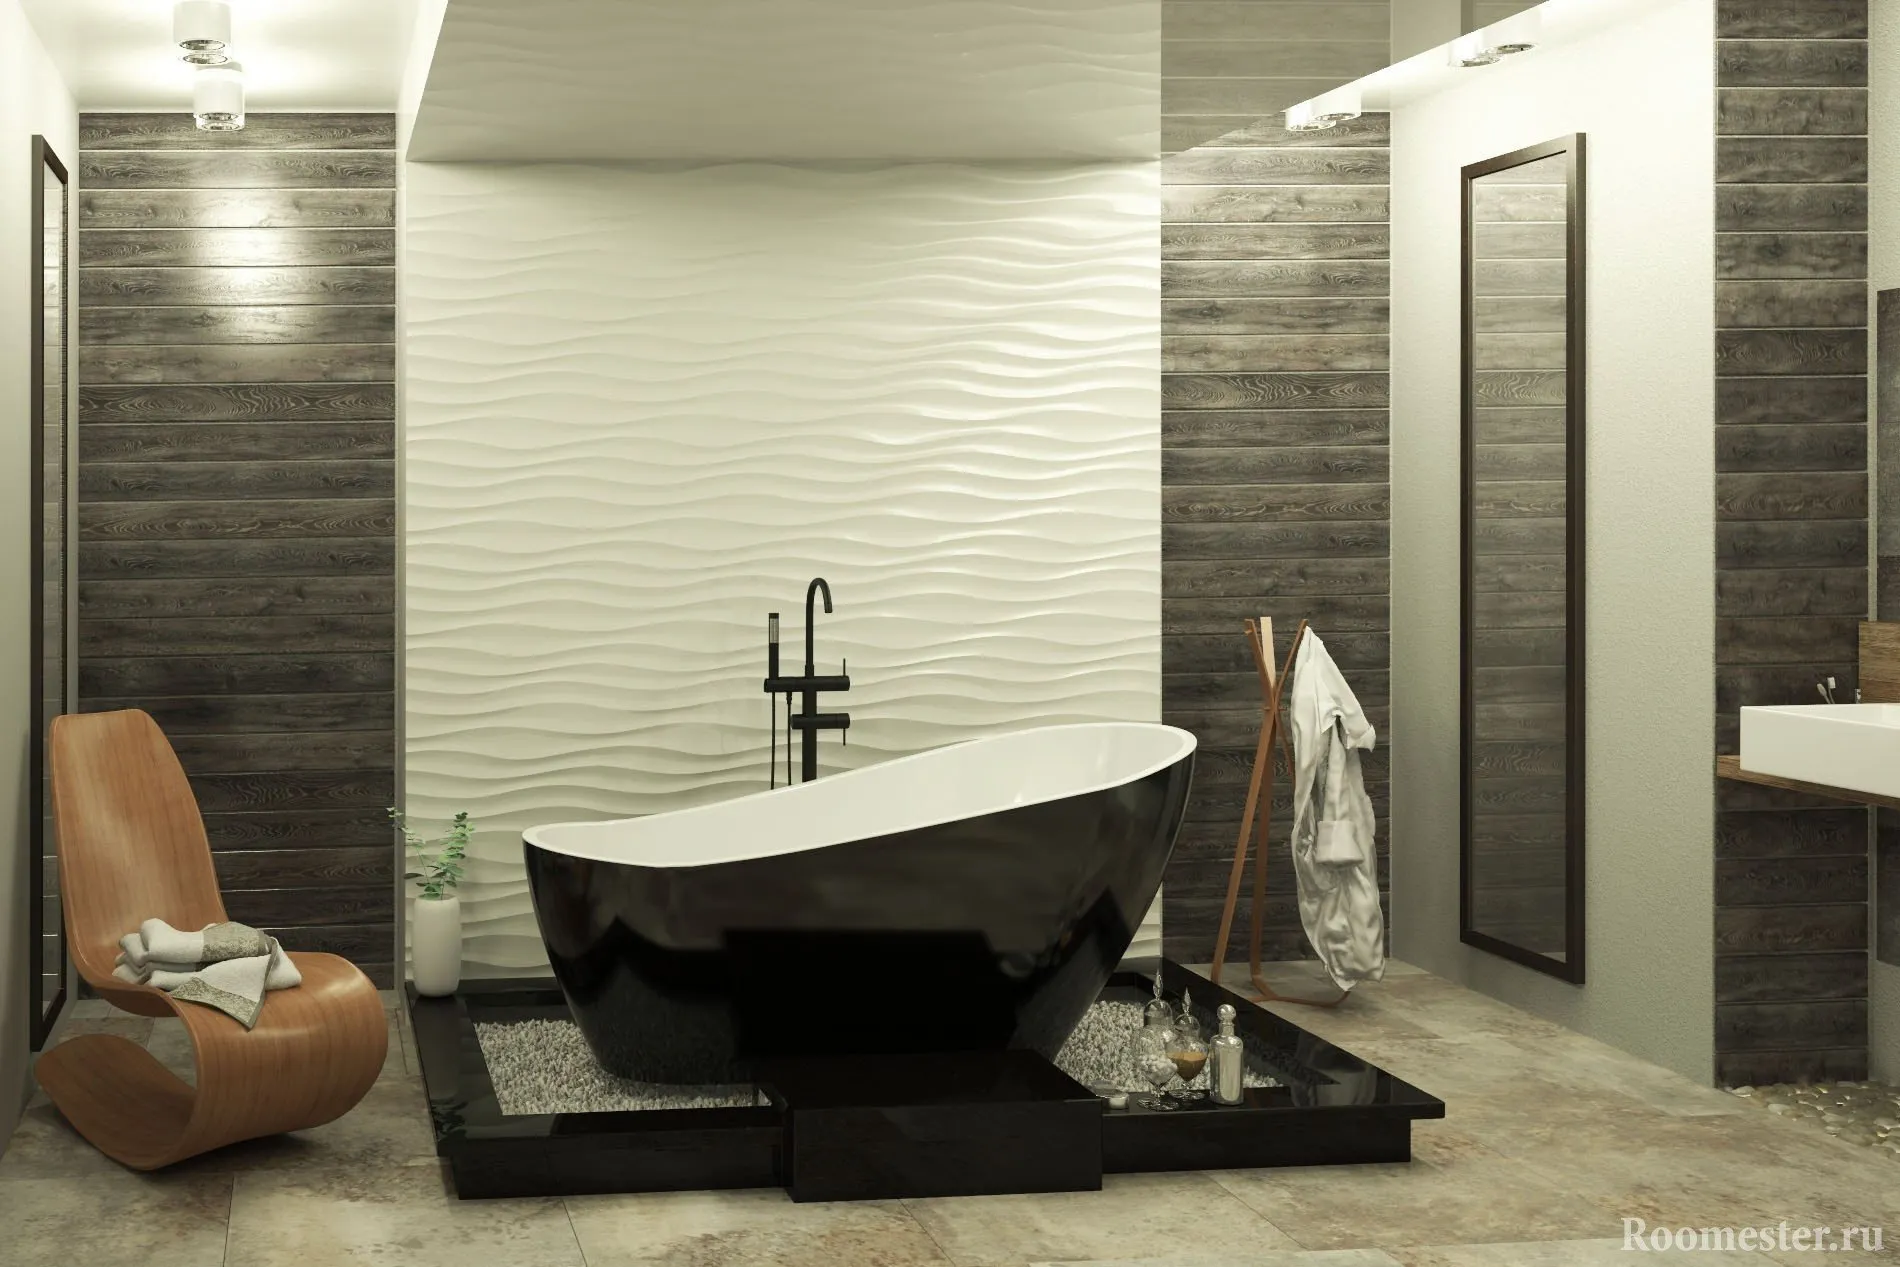 Мдф панели для ванной комнаты. Porcelanosa 3d плитка. Отделочные панели для ванной комнаты. Отделка стен в ванной комнате. Декоративные панели в ванную комнату.